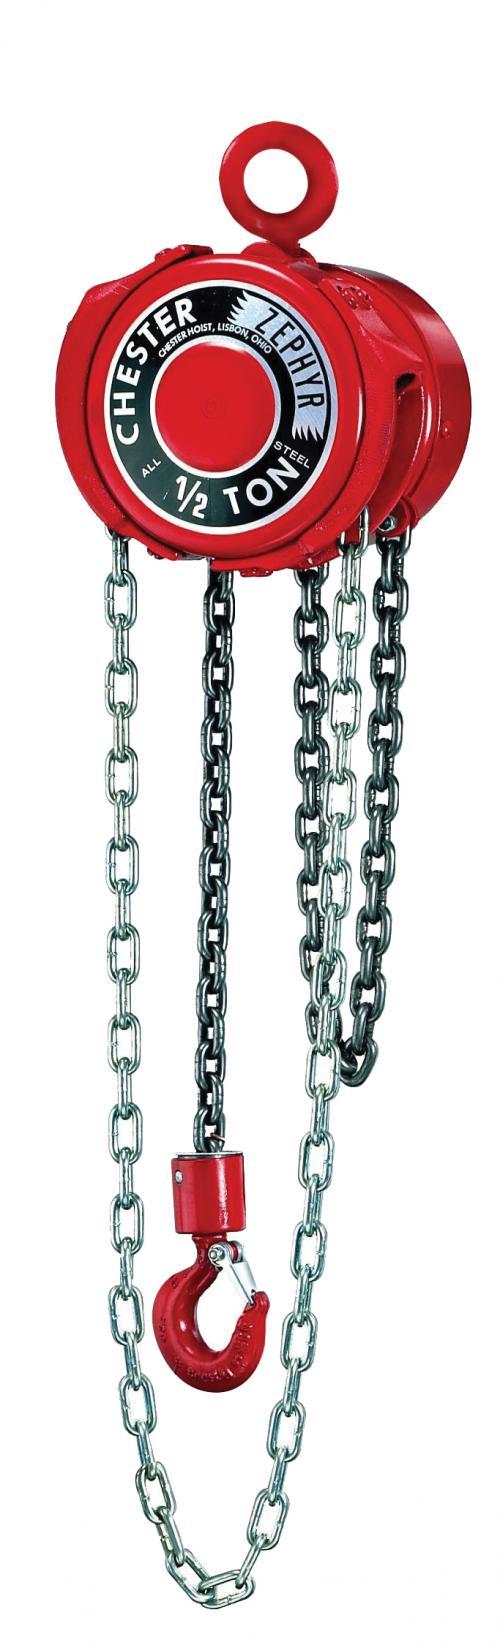 1-1/2 Ton Chester Zephyr | Manual Chain Hoist | Uescocranes.com